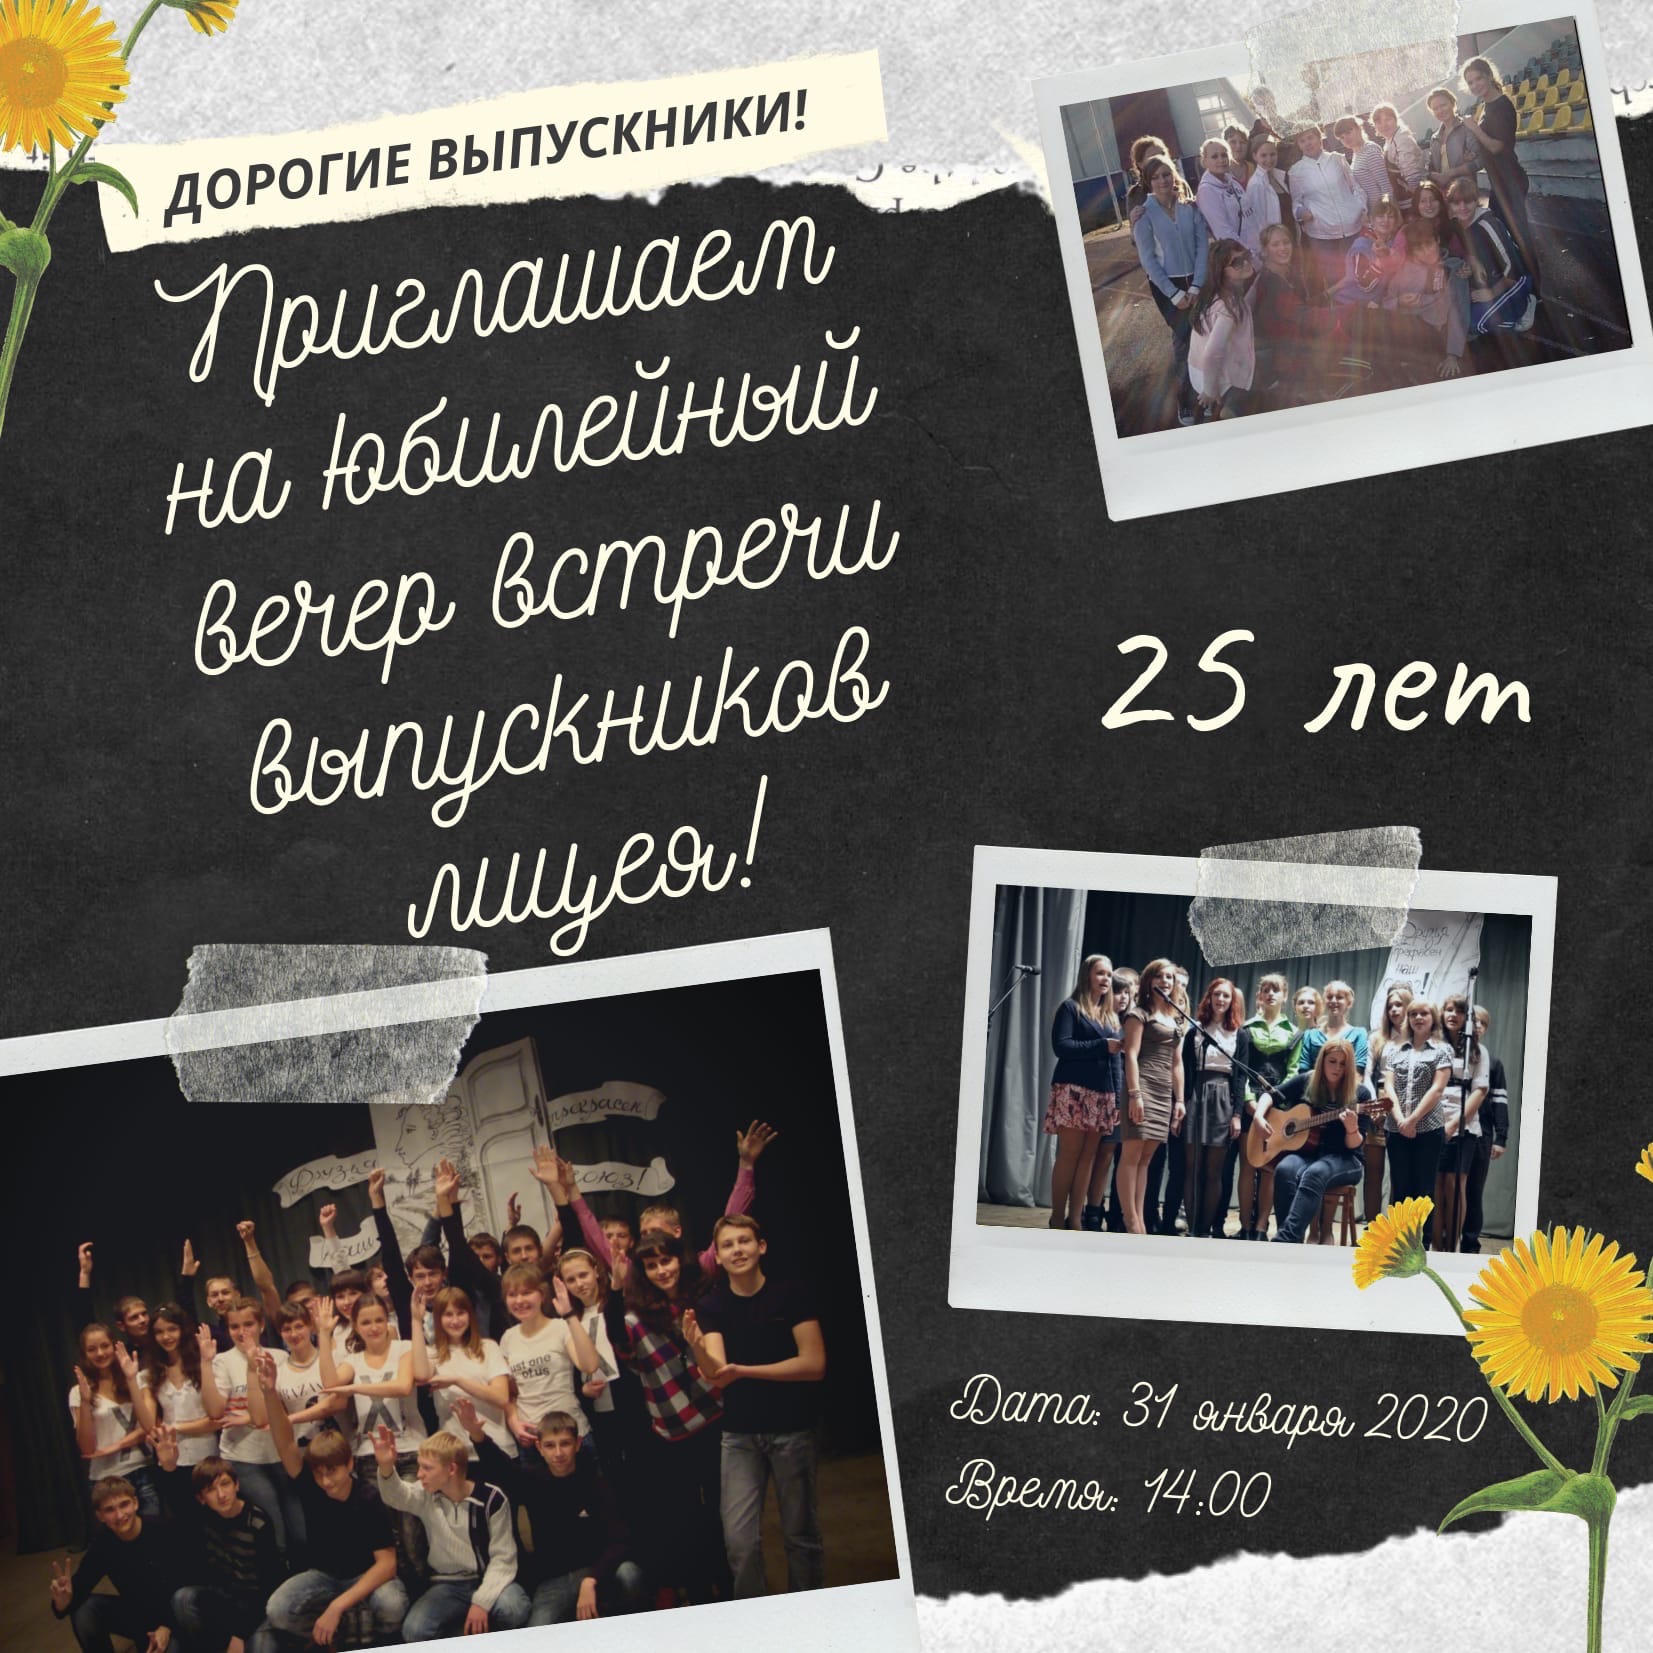 В Новозыбкове ждут лицеистов на 25-летний юбилей